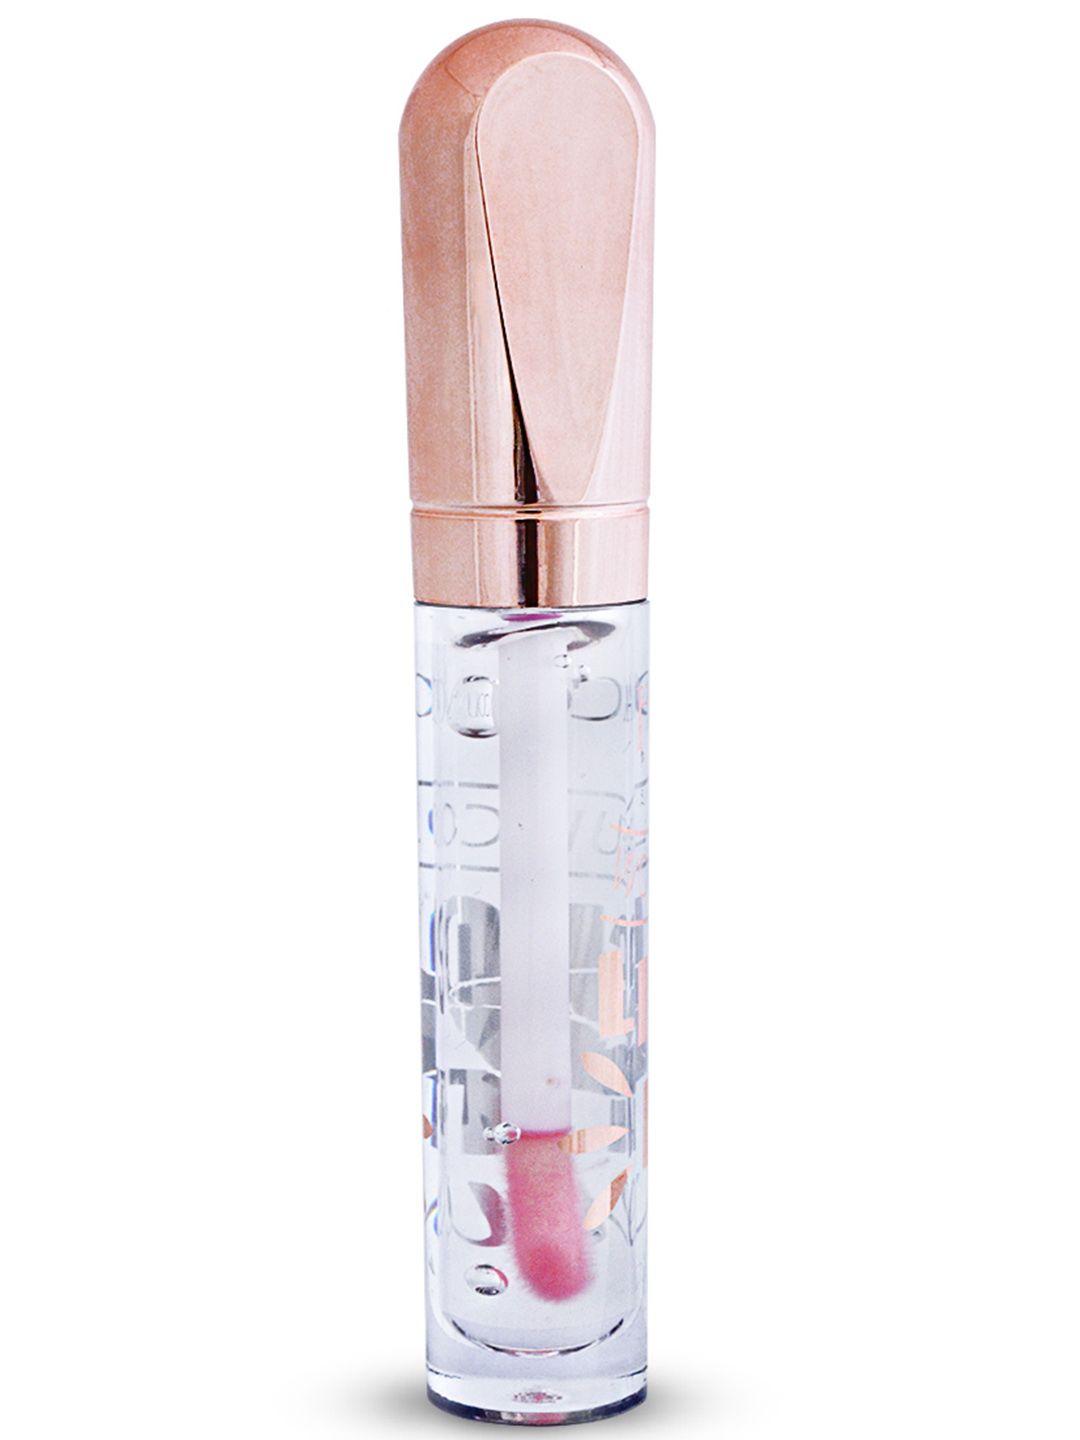 adbeni advance lip gloss - 10ml - natural pink